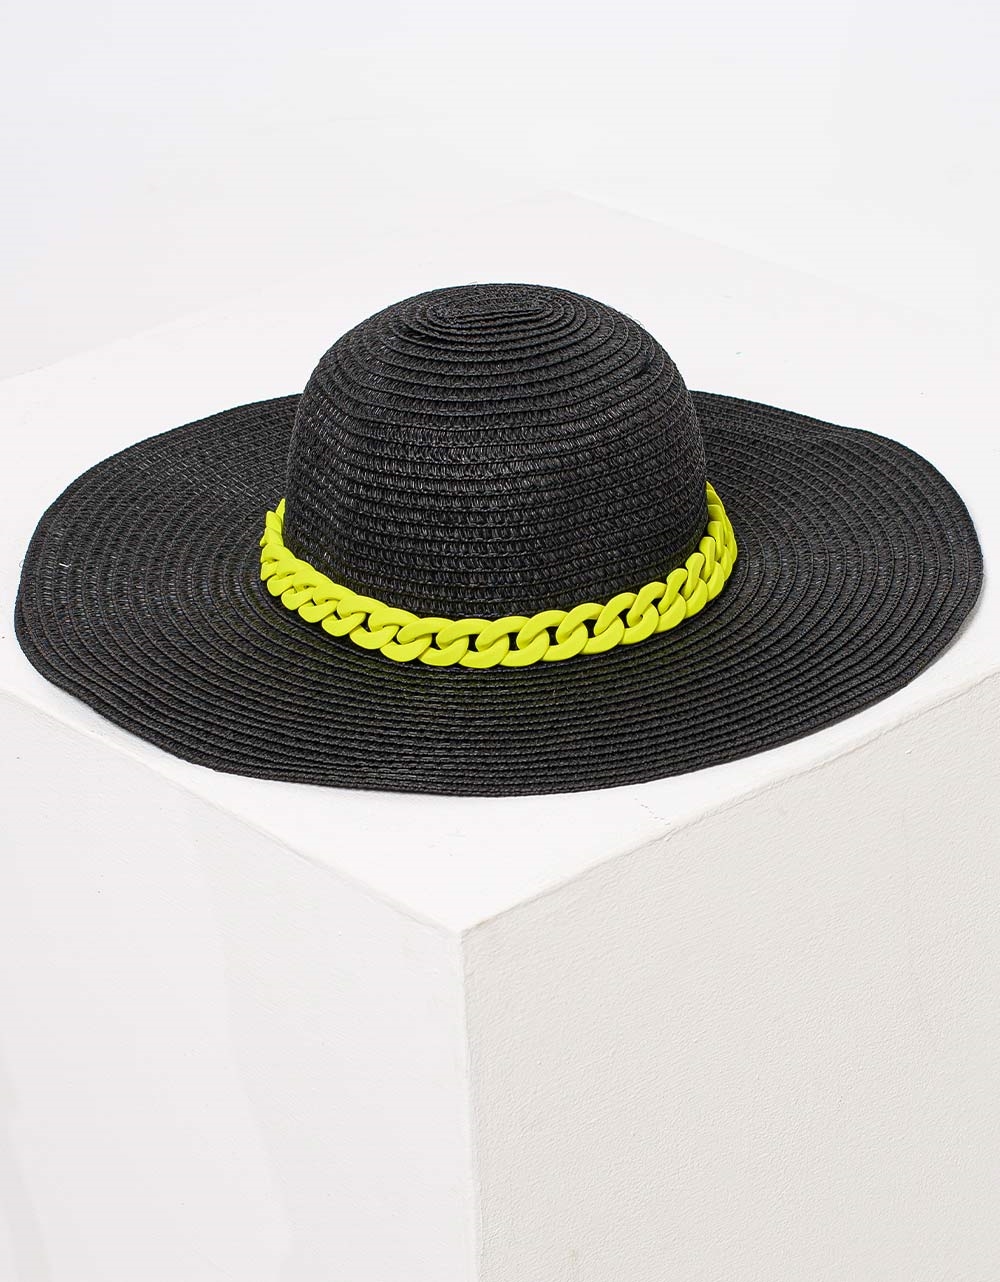 Εικόνα από Γυναικείo καπέλo ψαθινό με χρωματιστή λεπτομέρεια Μαύρο